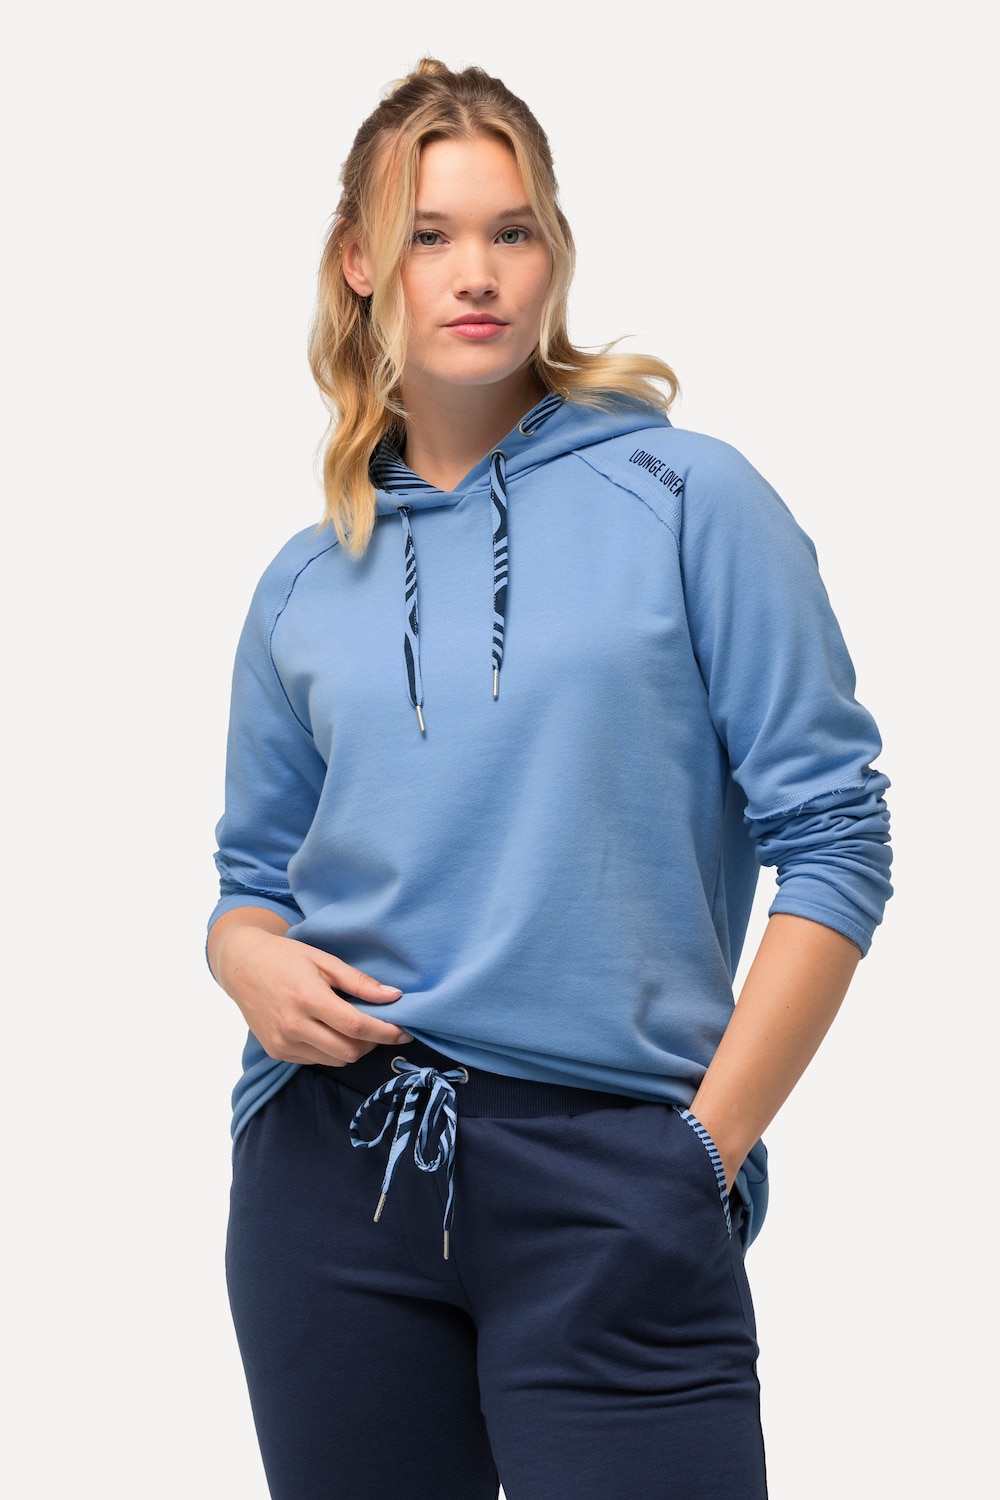 Grote Maten Loungewear-hoodie, Dames, blauw, Maat: 42/44, Katoen/Polyester, Ulla Popken